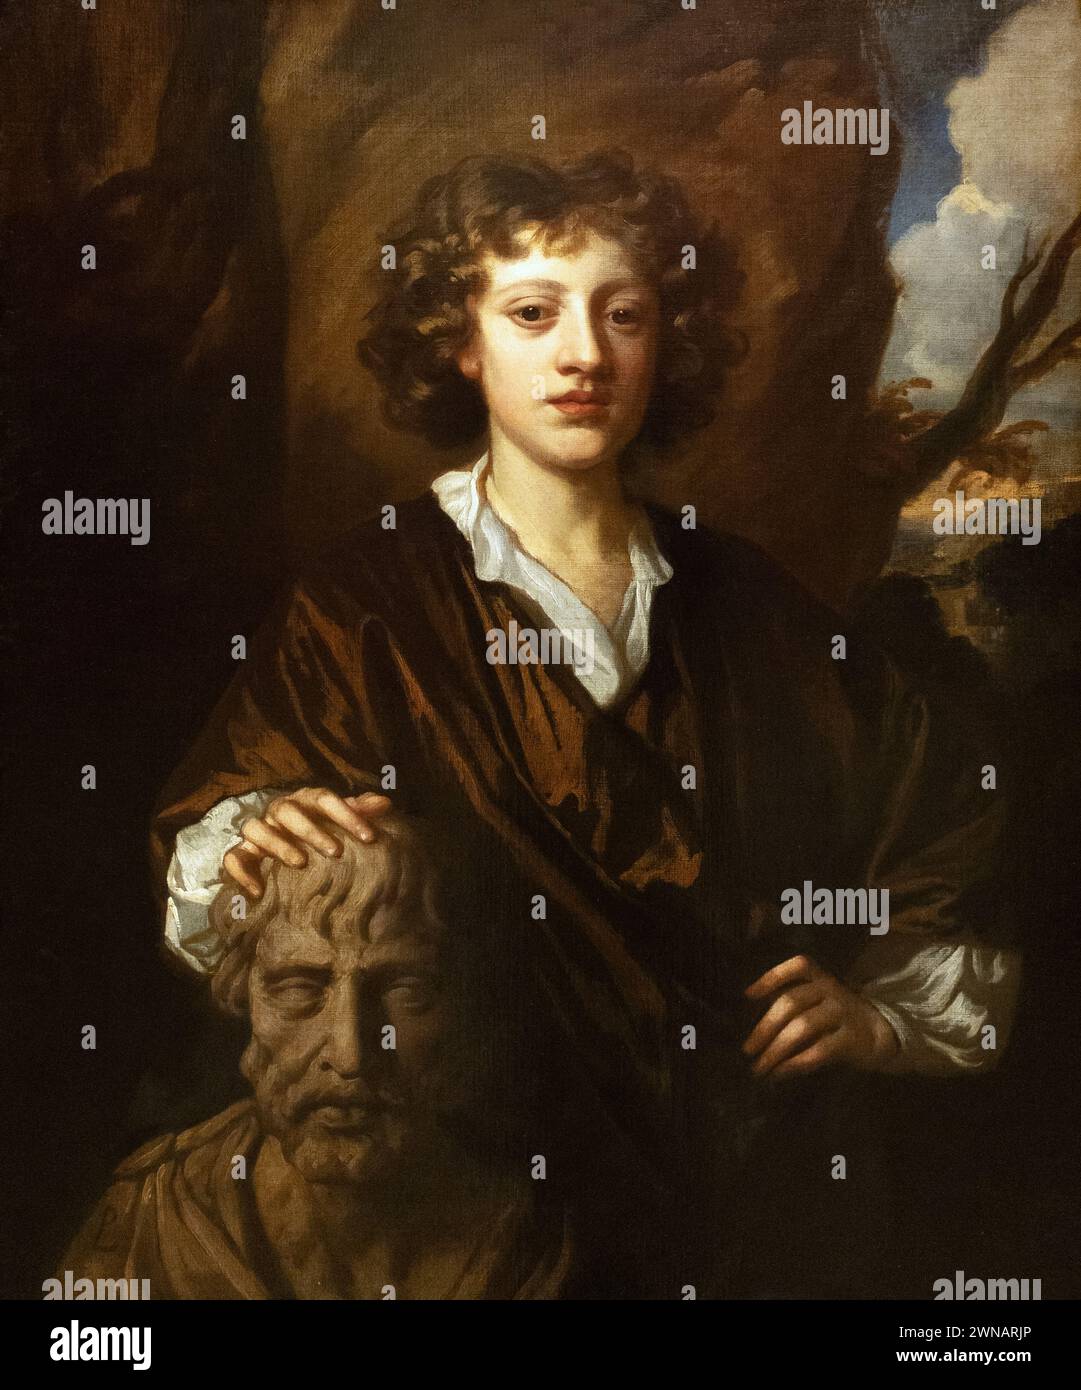 Sir Peter Lely Gemälde, Bartholomew Beale, Porträt von Mary Beales Sohn aus dem Jahr 1670. Niederländischer Porträtmaler der 1600er Jahre, der den größten Teil seines Lebens in England verbrachte Stockfoto